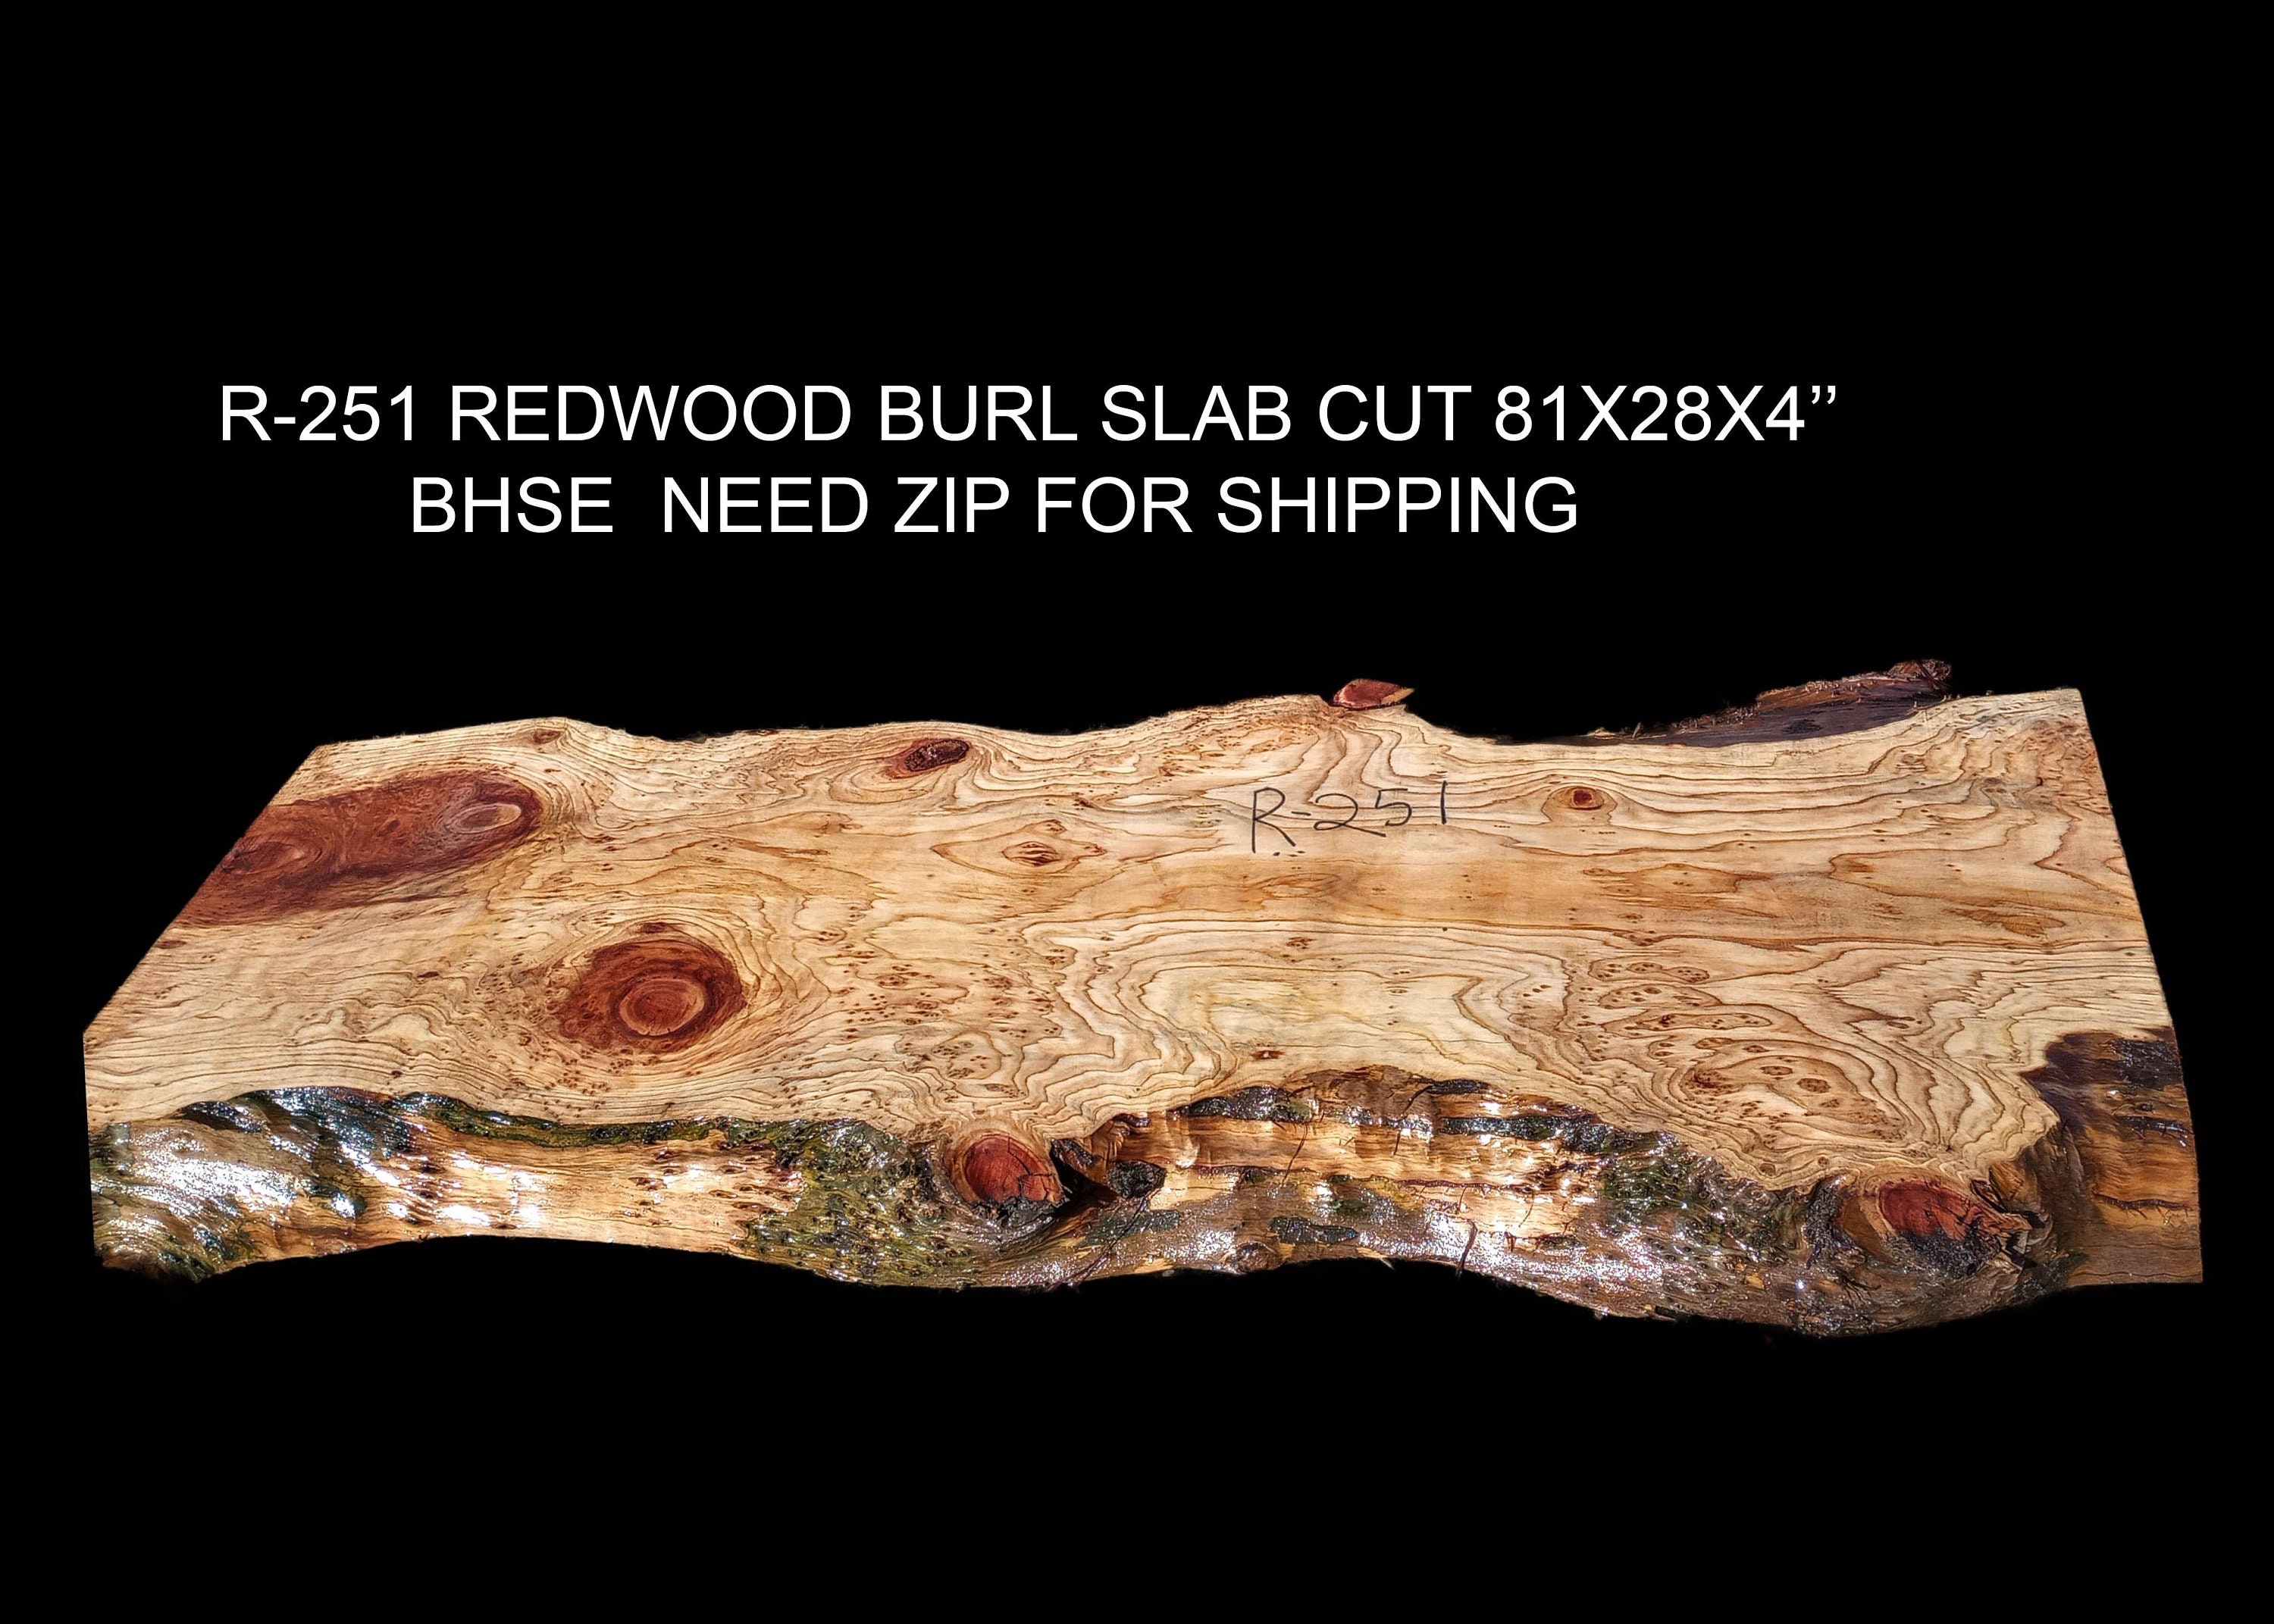 redwood burl slab, live edge slab, DIY wood crafts, Bar counter